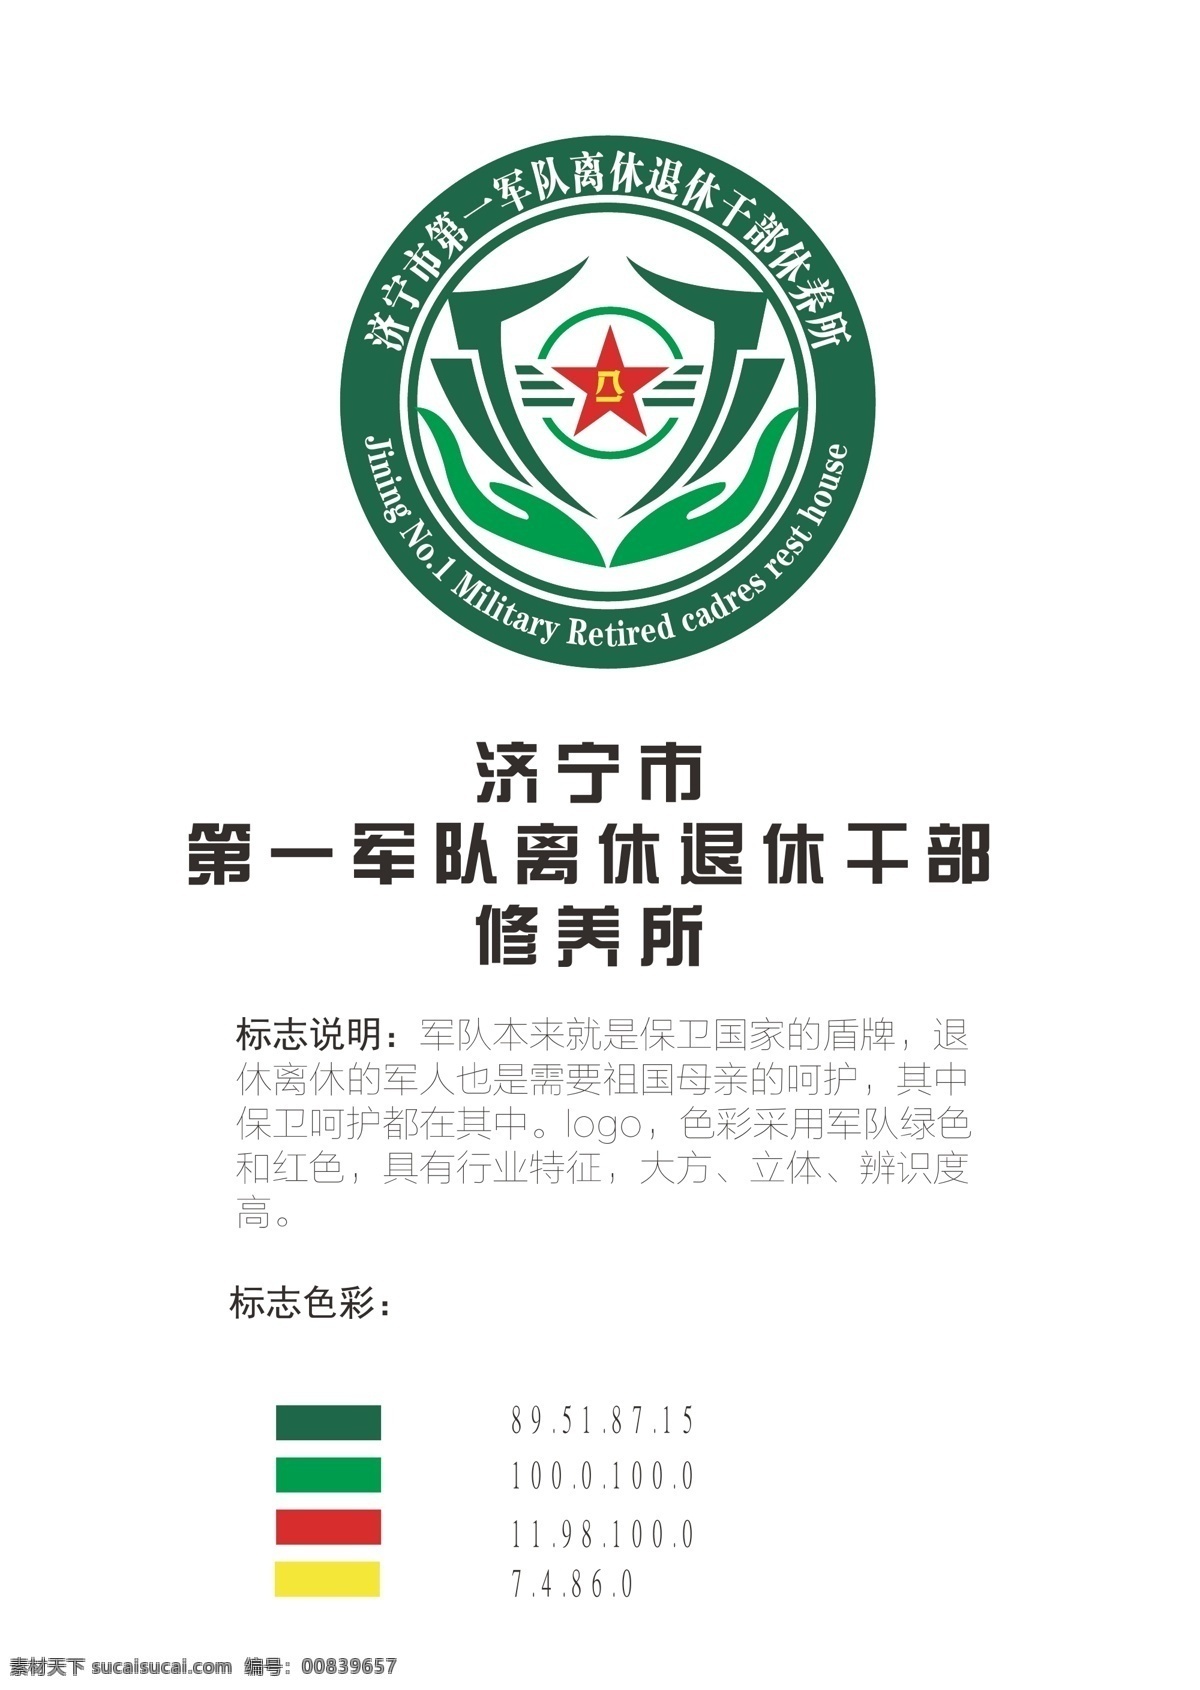 军队 离休 退休 干部 休养所 logo 标志图标 企业 标志